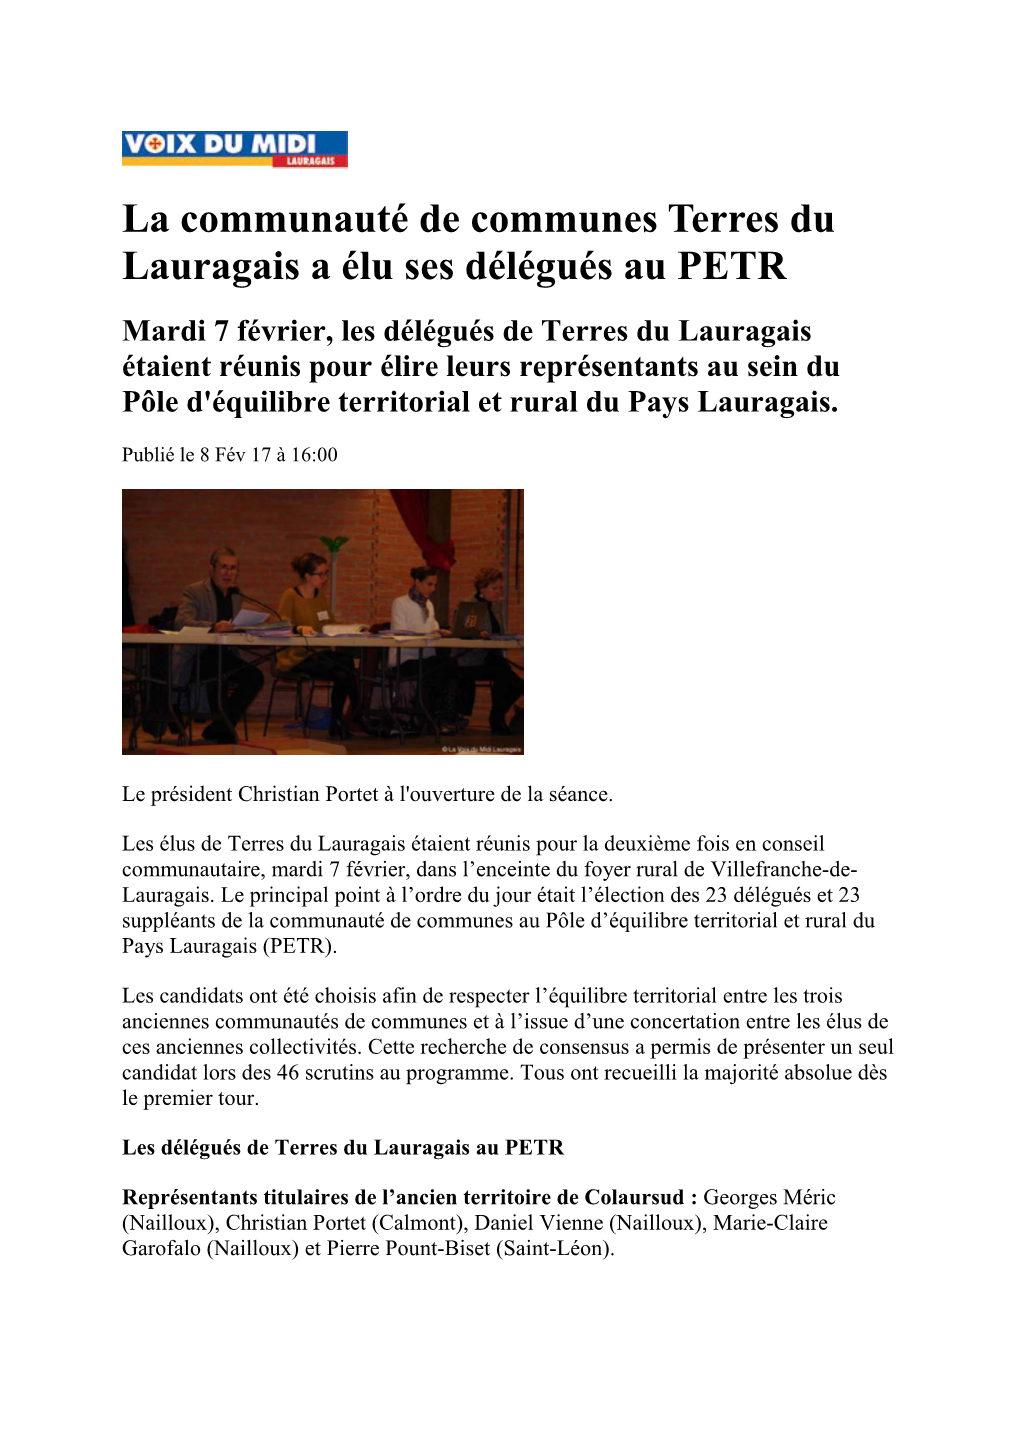 La Communauté De Communes Terres Du Lauragais a Élu Ses Délégués Au